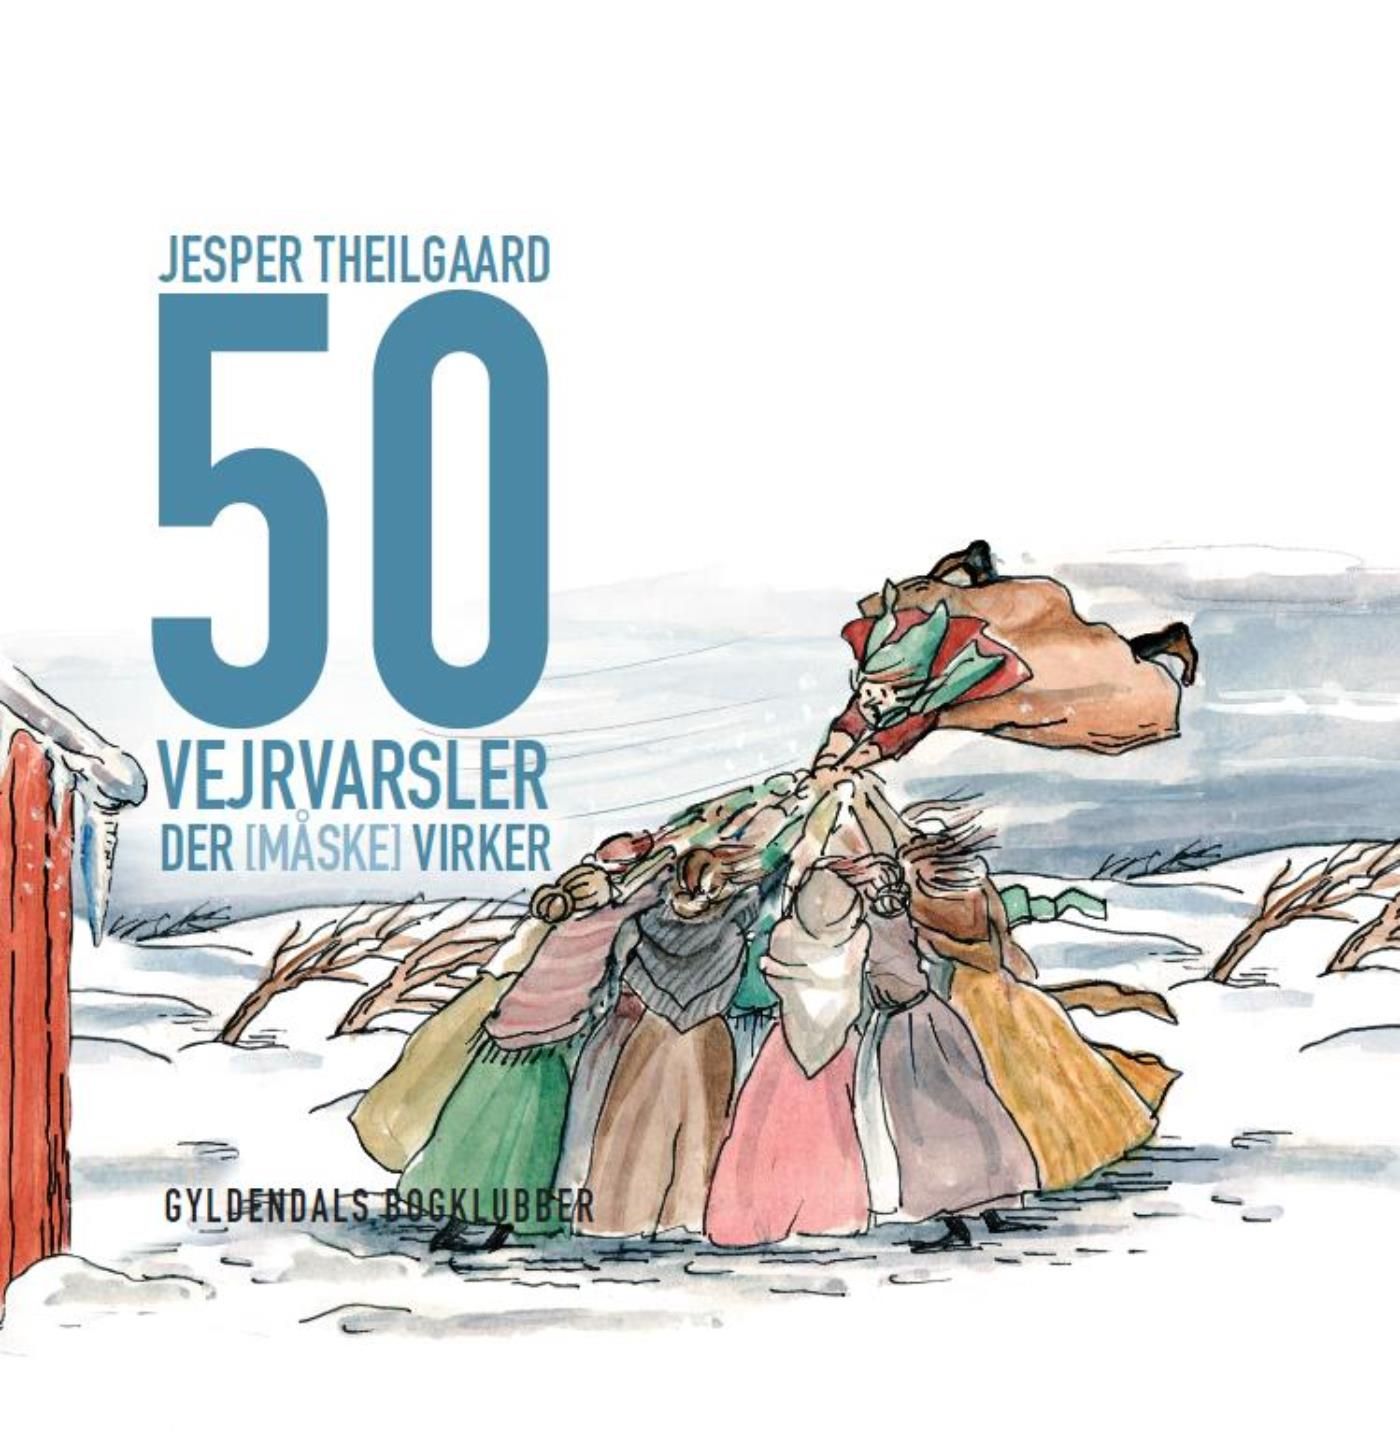 50 vejrvarsler der [måske] virker, e-bok av Jesper Theilgaard